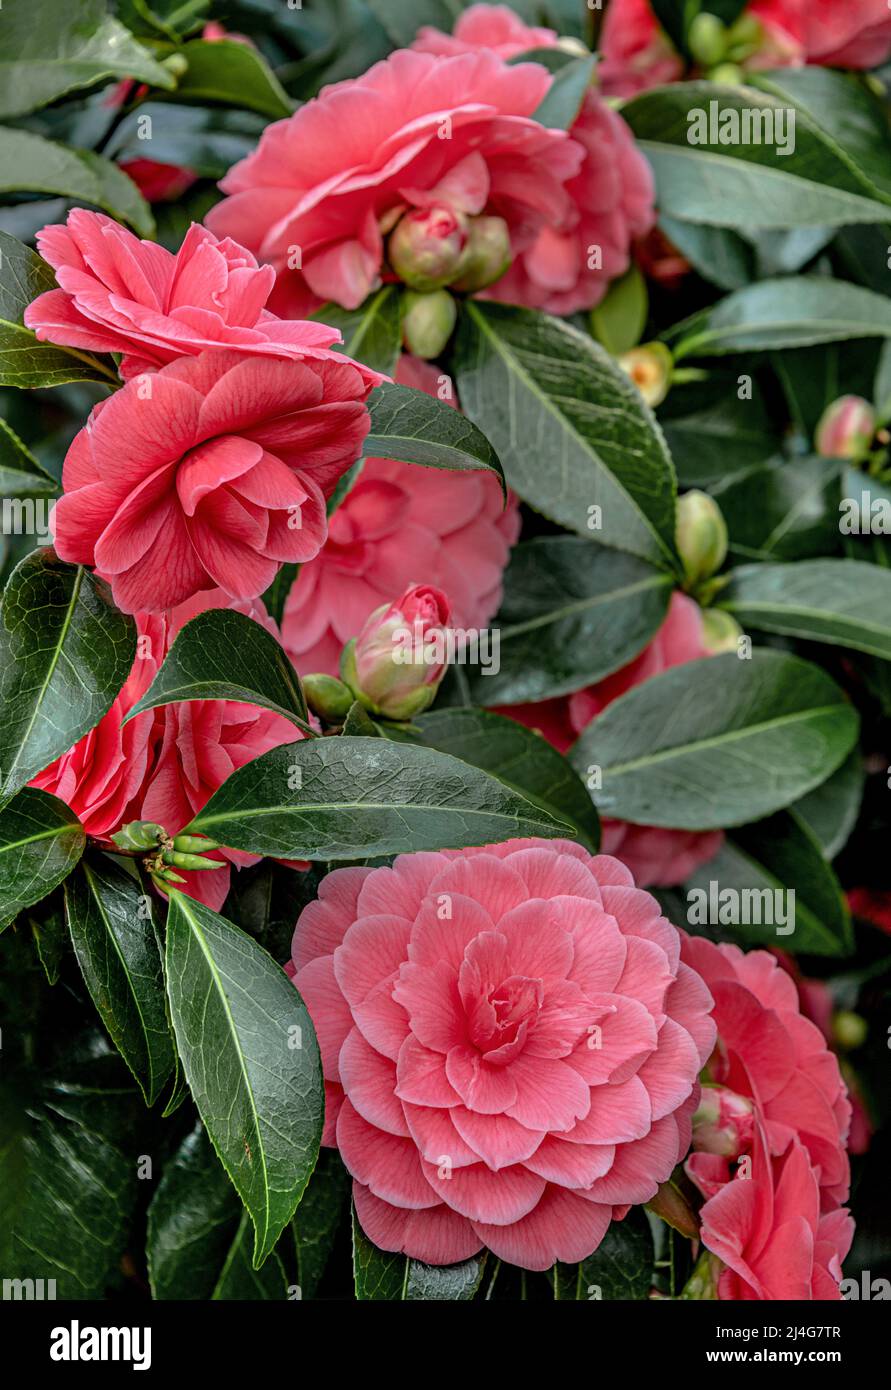 Primer plano de las flores rosadas Camellia Japonica, Il Tramonto en Landschloss Zuschendorf, Sajonia, Alemania Foto de stock